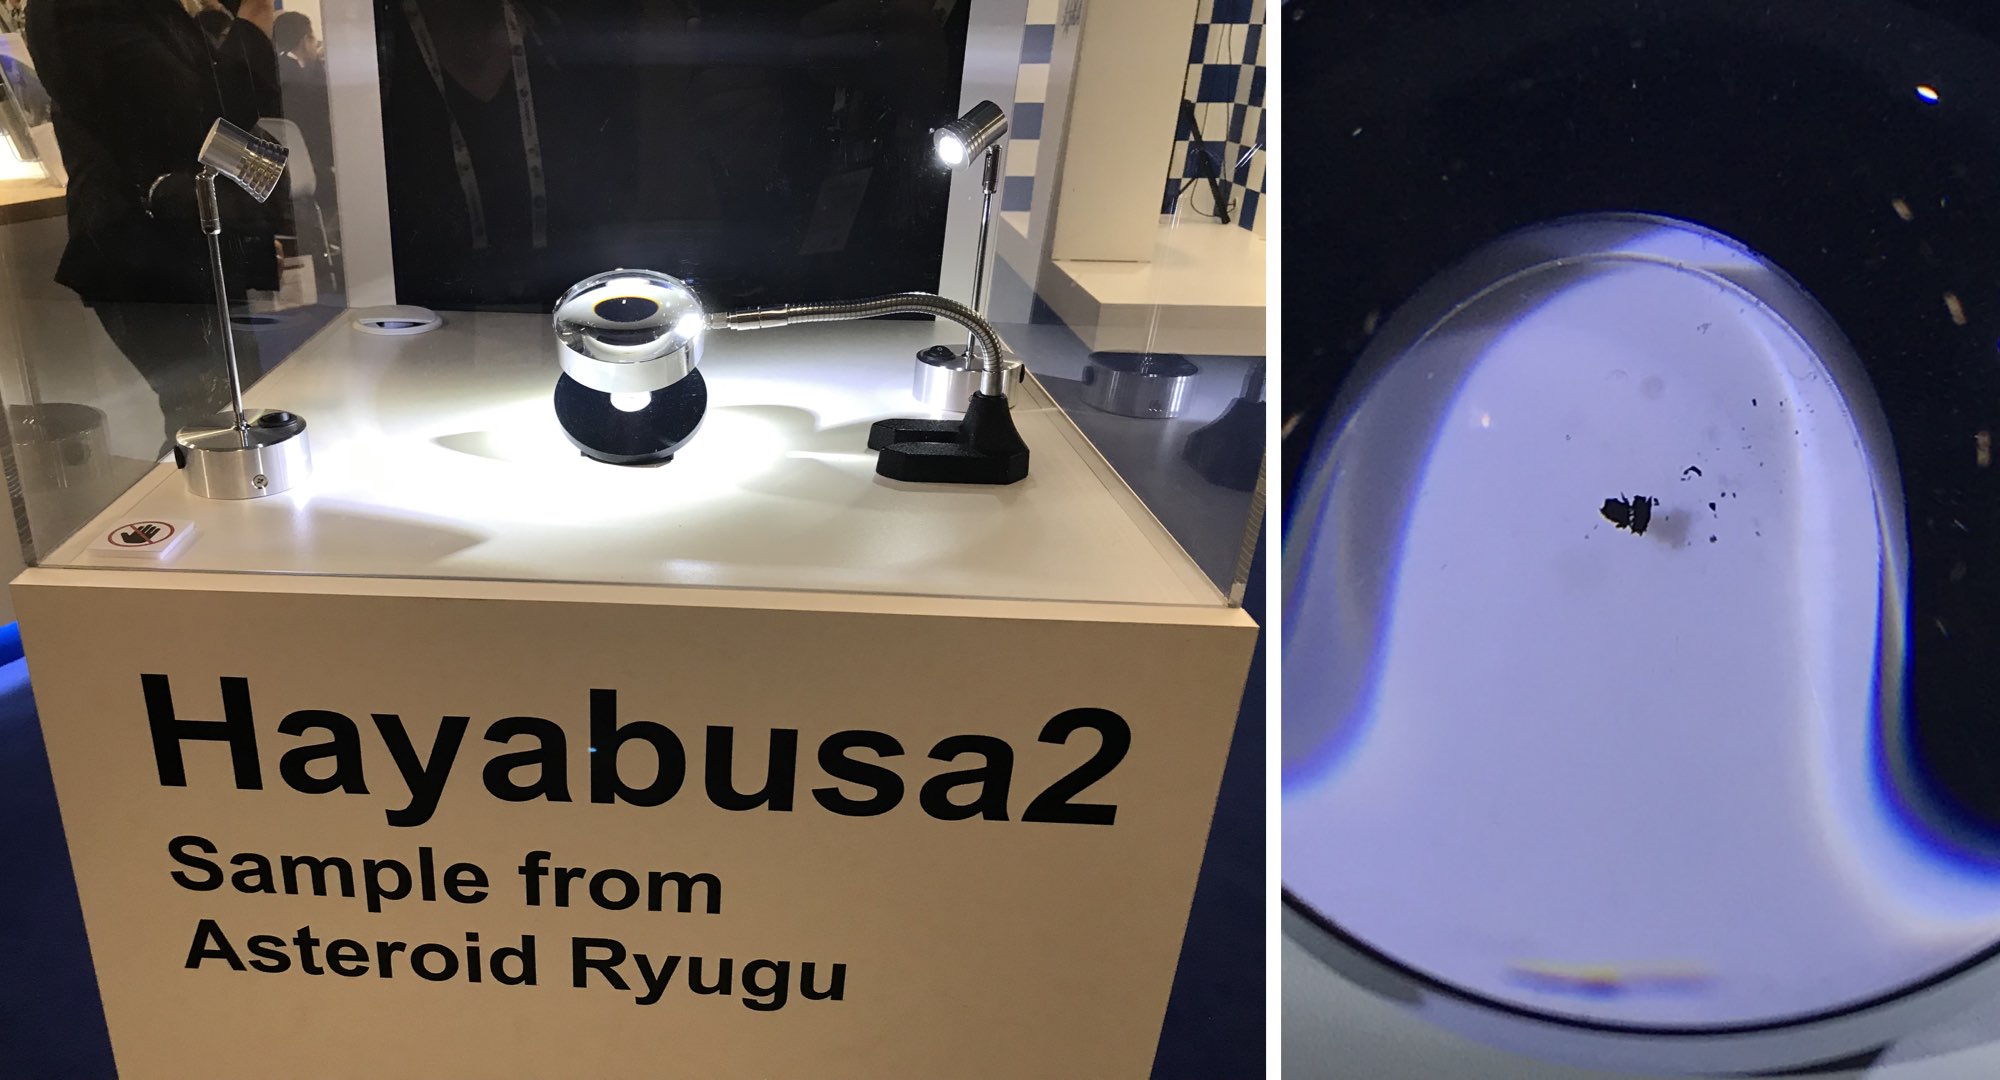 Sur son stand, l’agence japonaise JAXA montrait un échantillon de l’astéroïde Ruygu ramené sur Terre par la sonde Hayabusa2.<br /> Crédit : Cité de l’espace/Olivier Sanguy